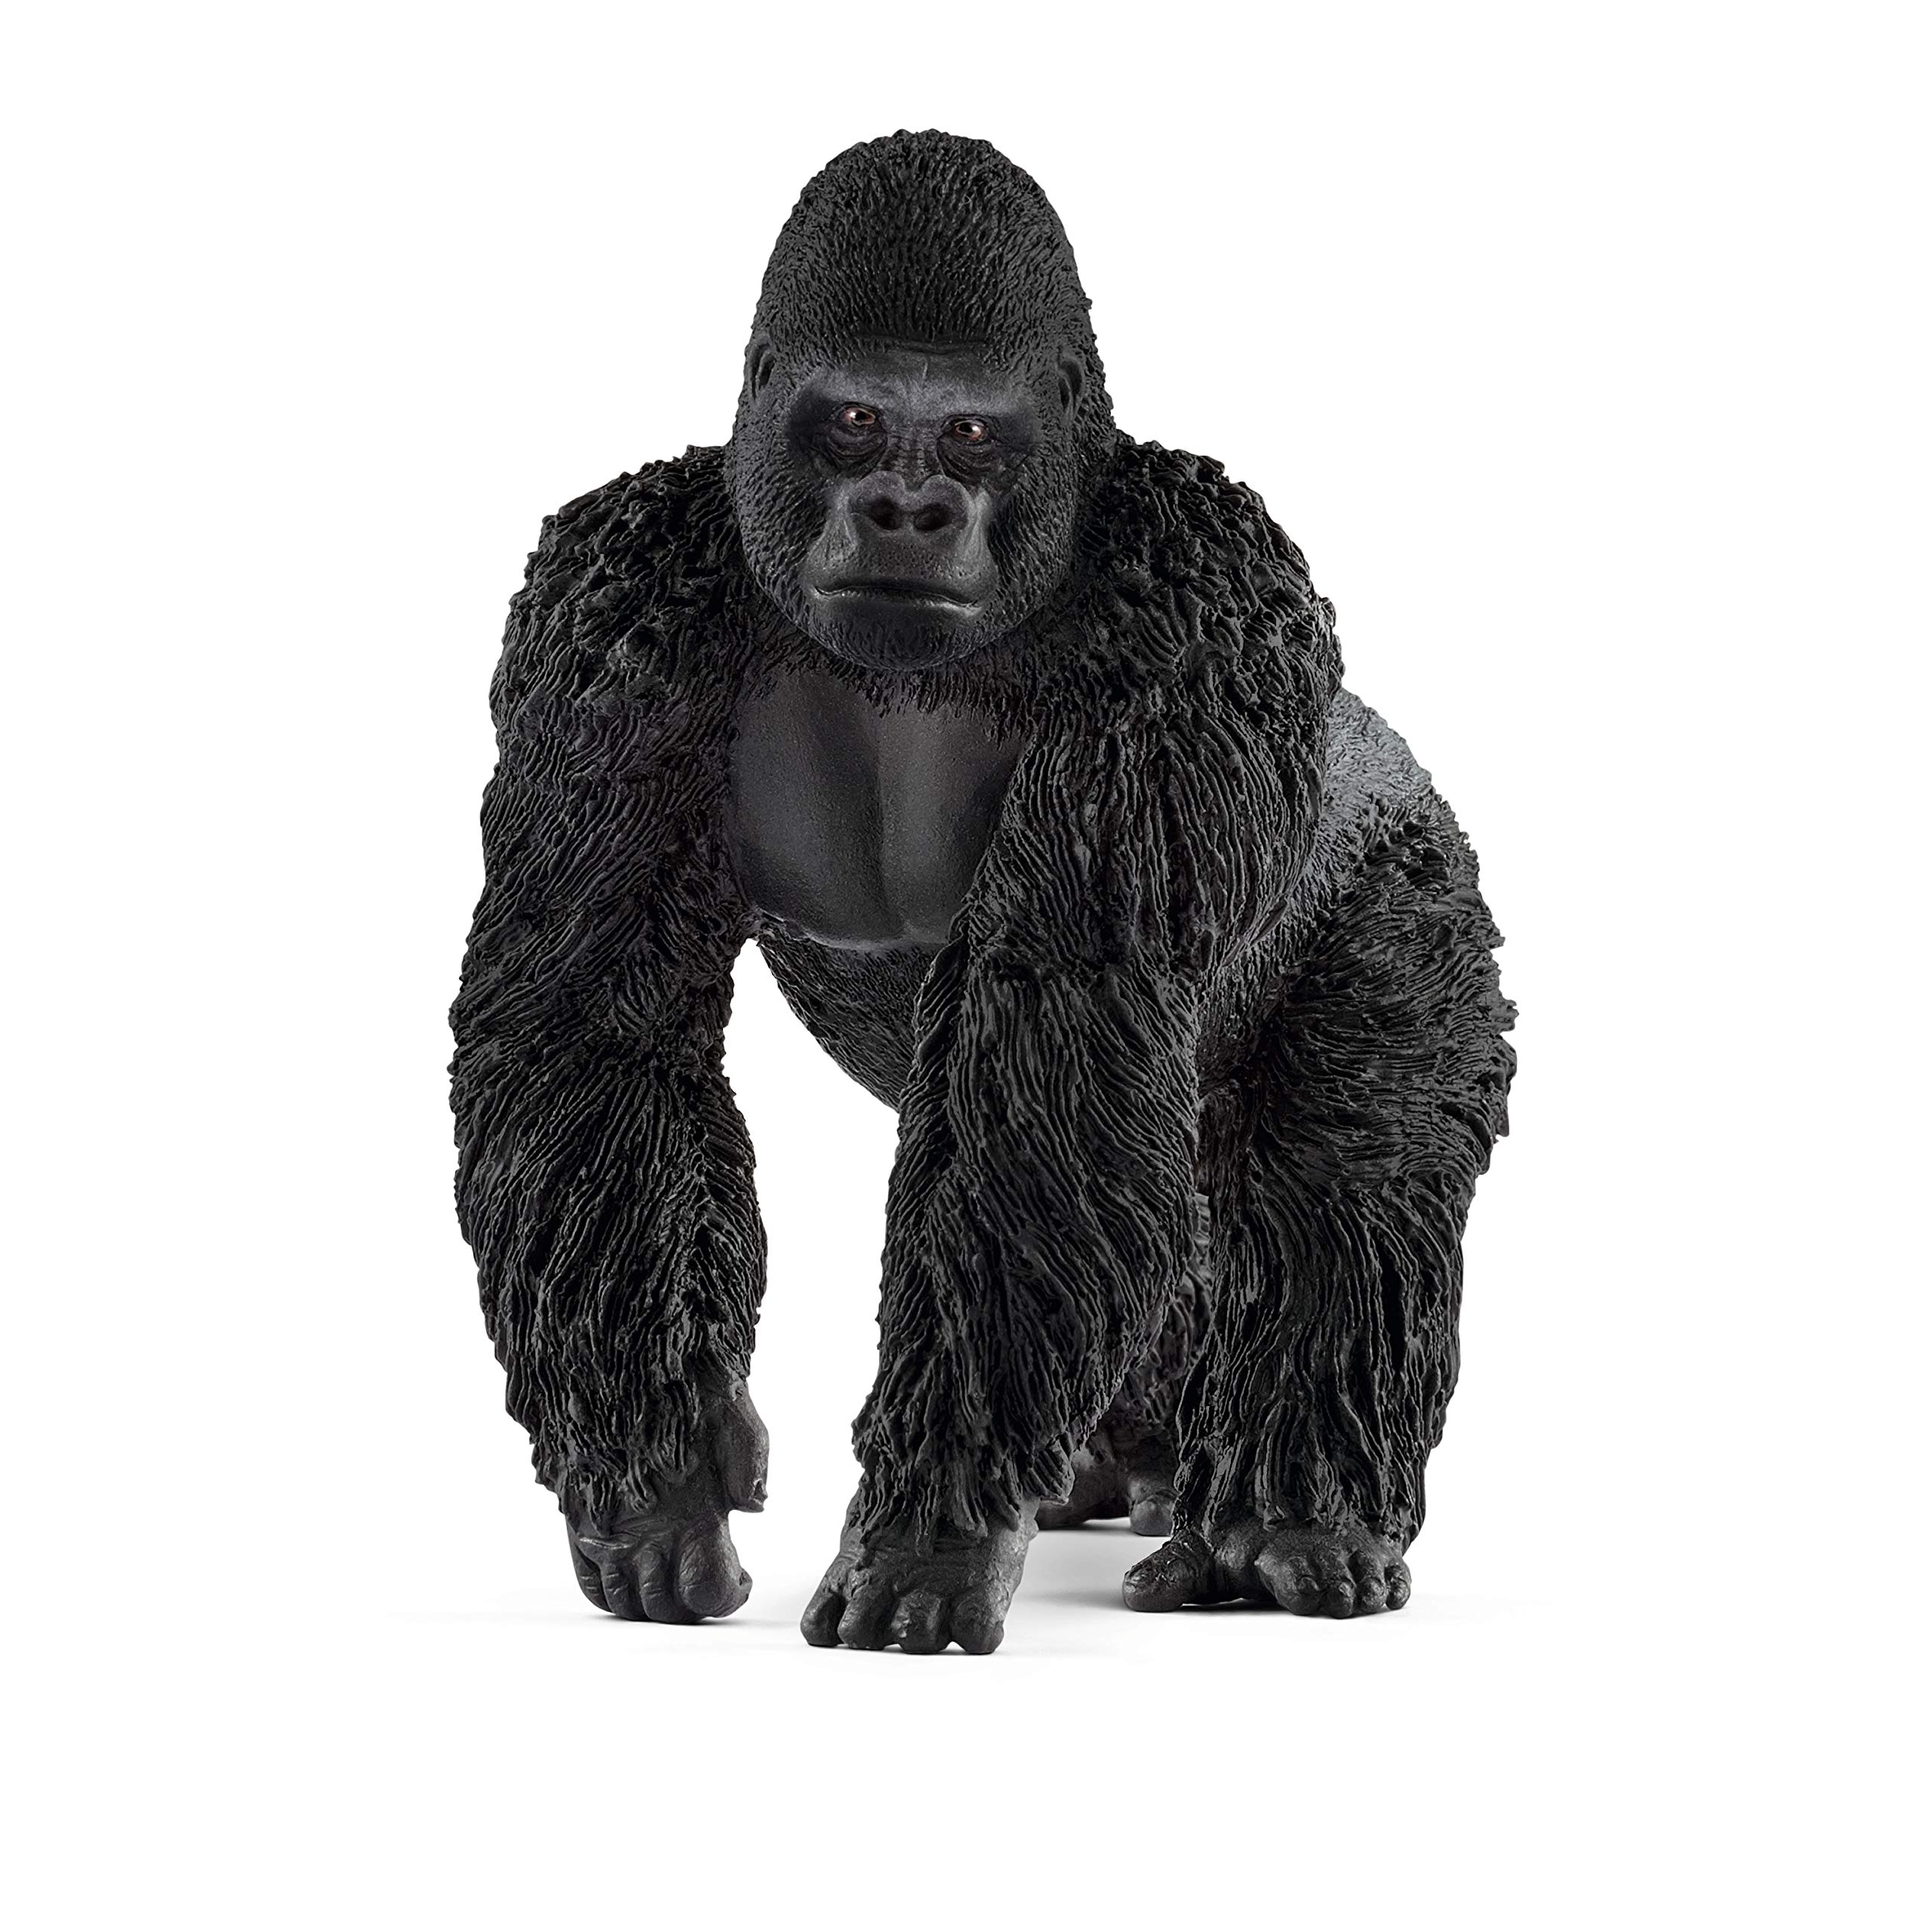 Animale Schleich gorilla maschio